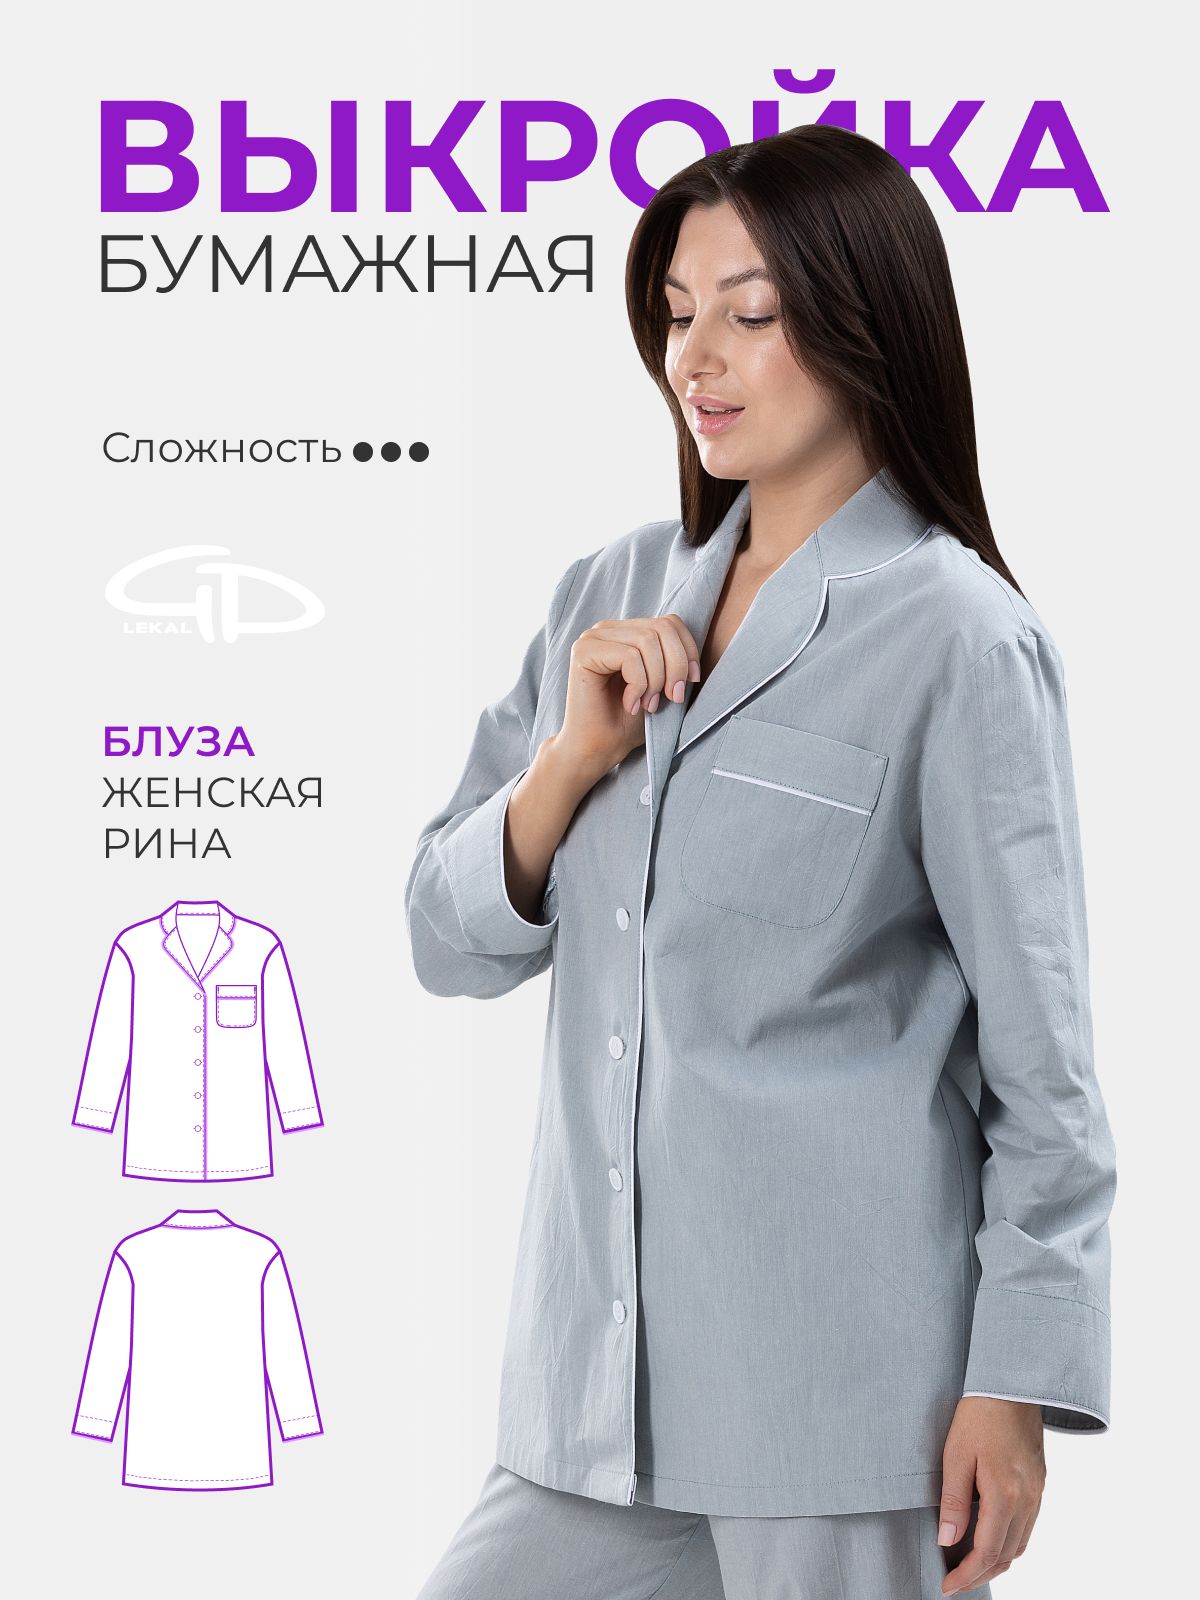 Выкройки блузок для женщин